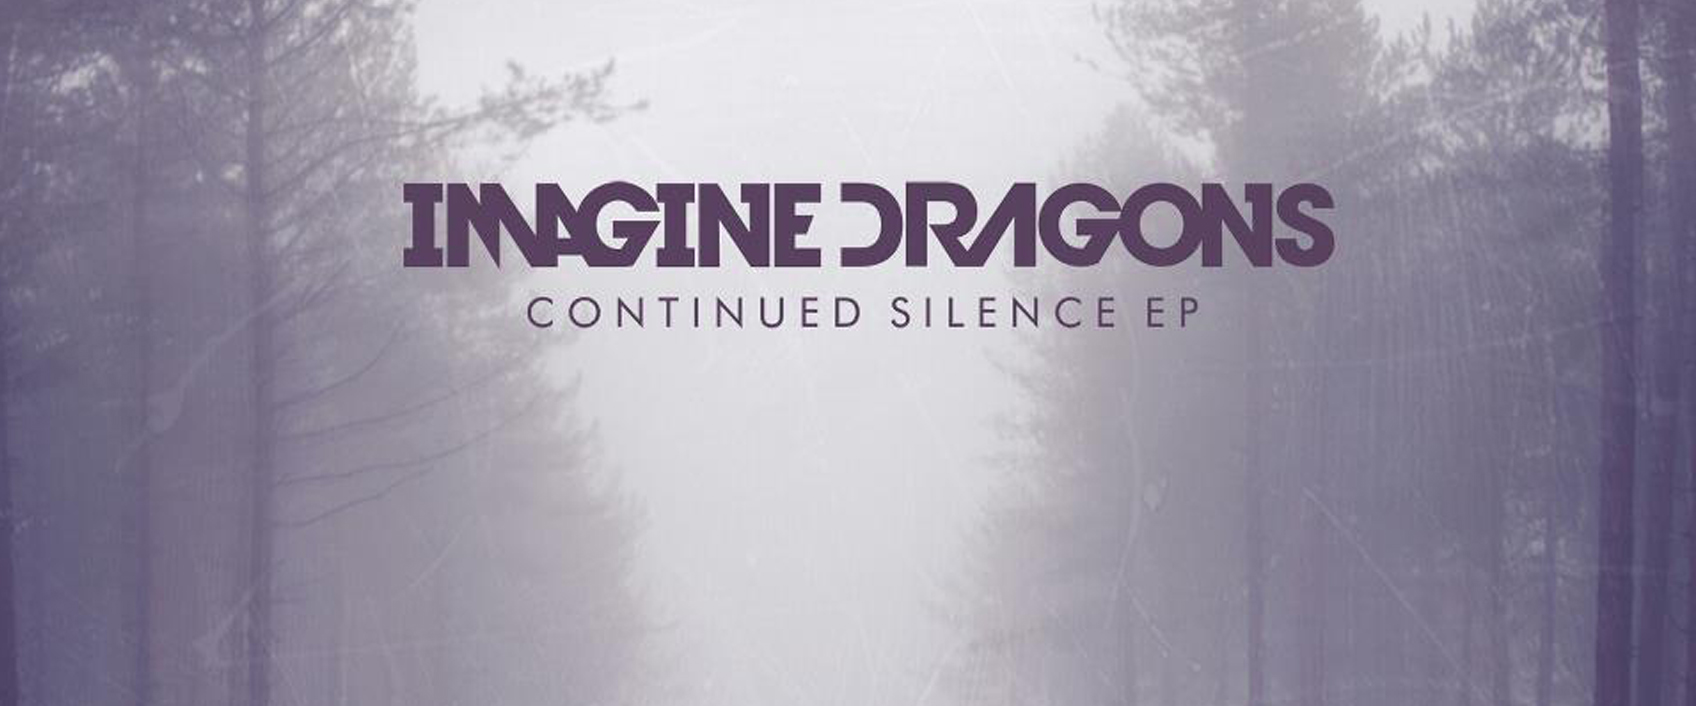 Evolve imagine. Imagine Dragons обложки. Обложки музыкальных альбомов imagine Dragons. Imagine Dragons Radioactive обложка. Imagine Dragons логотип.